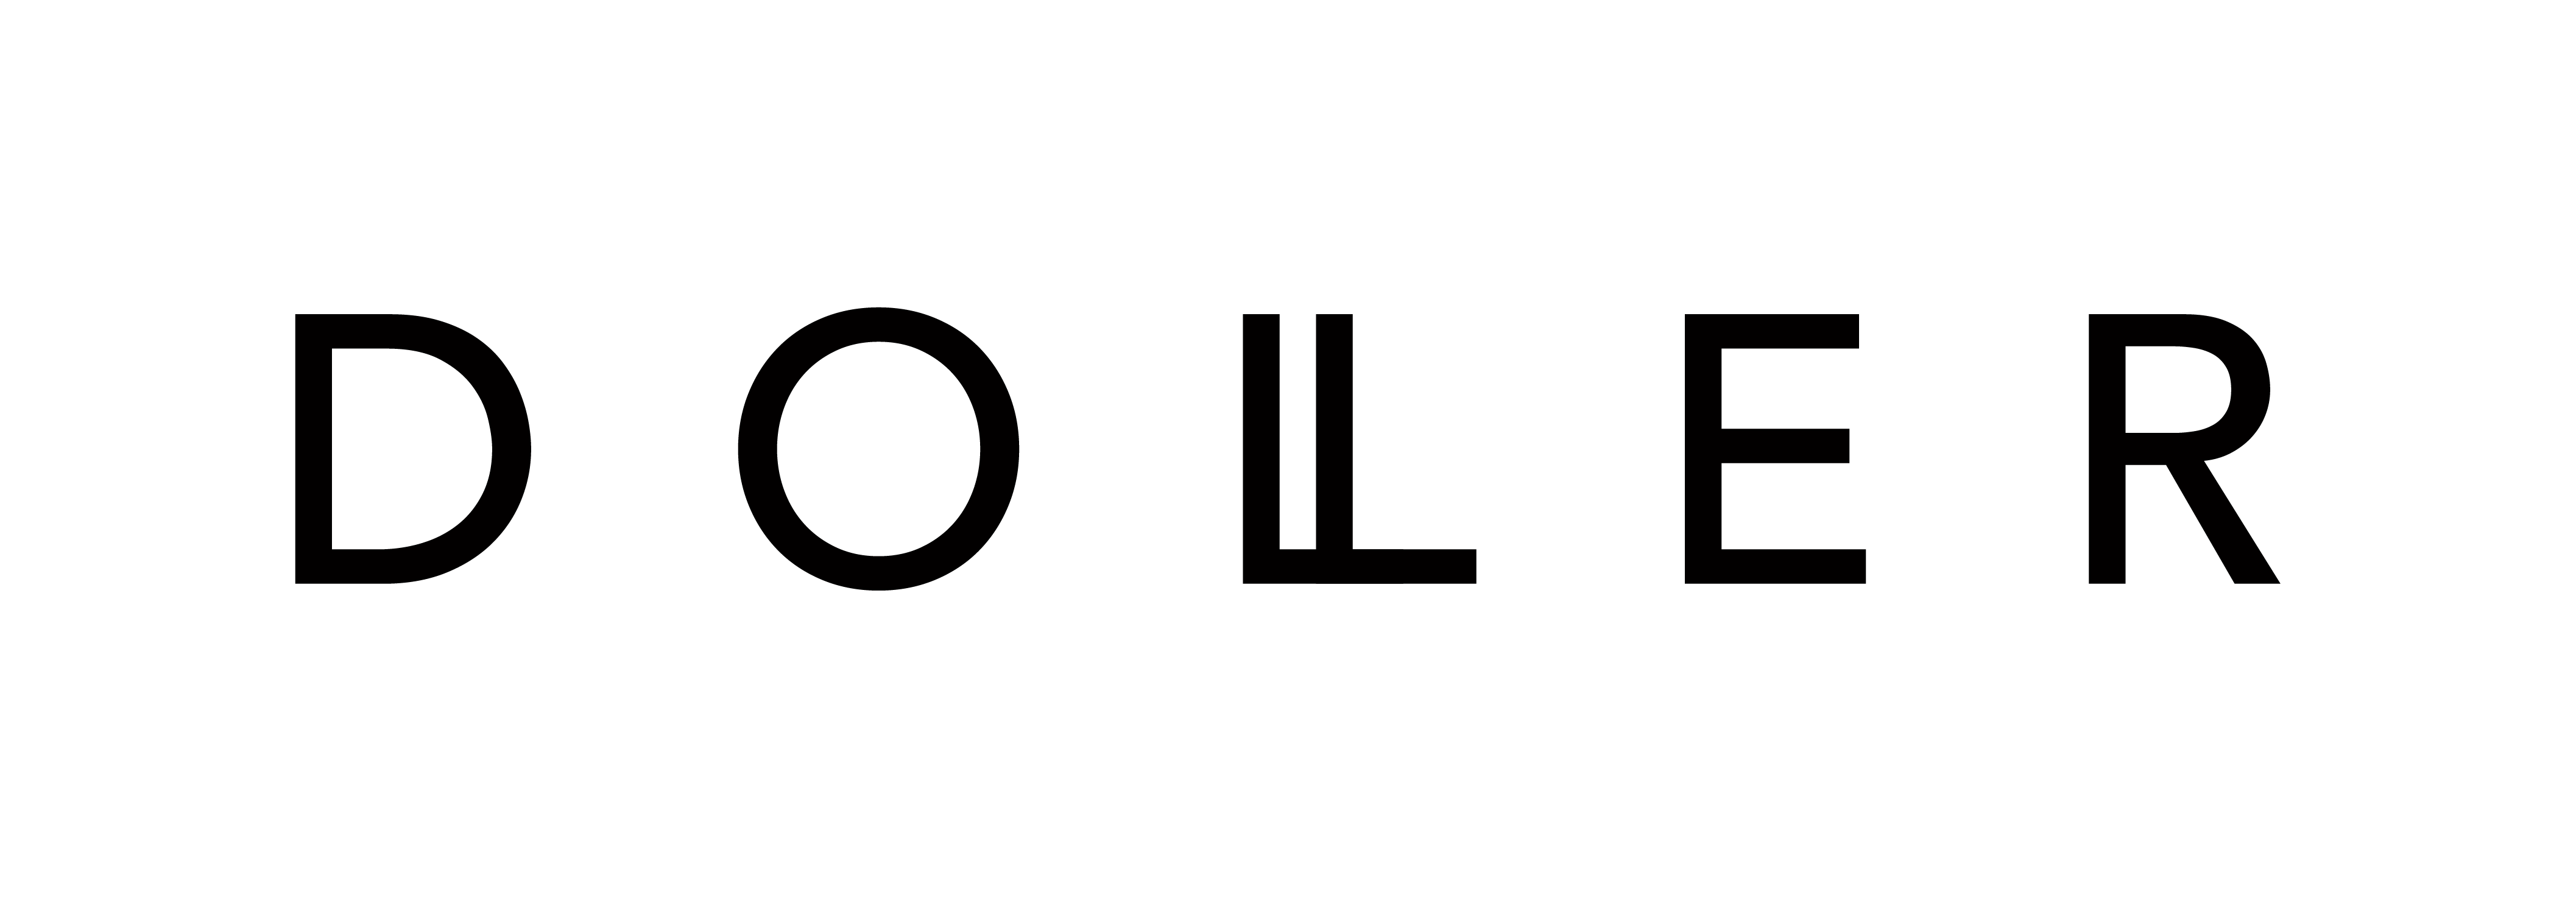 Doller logo